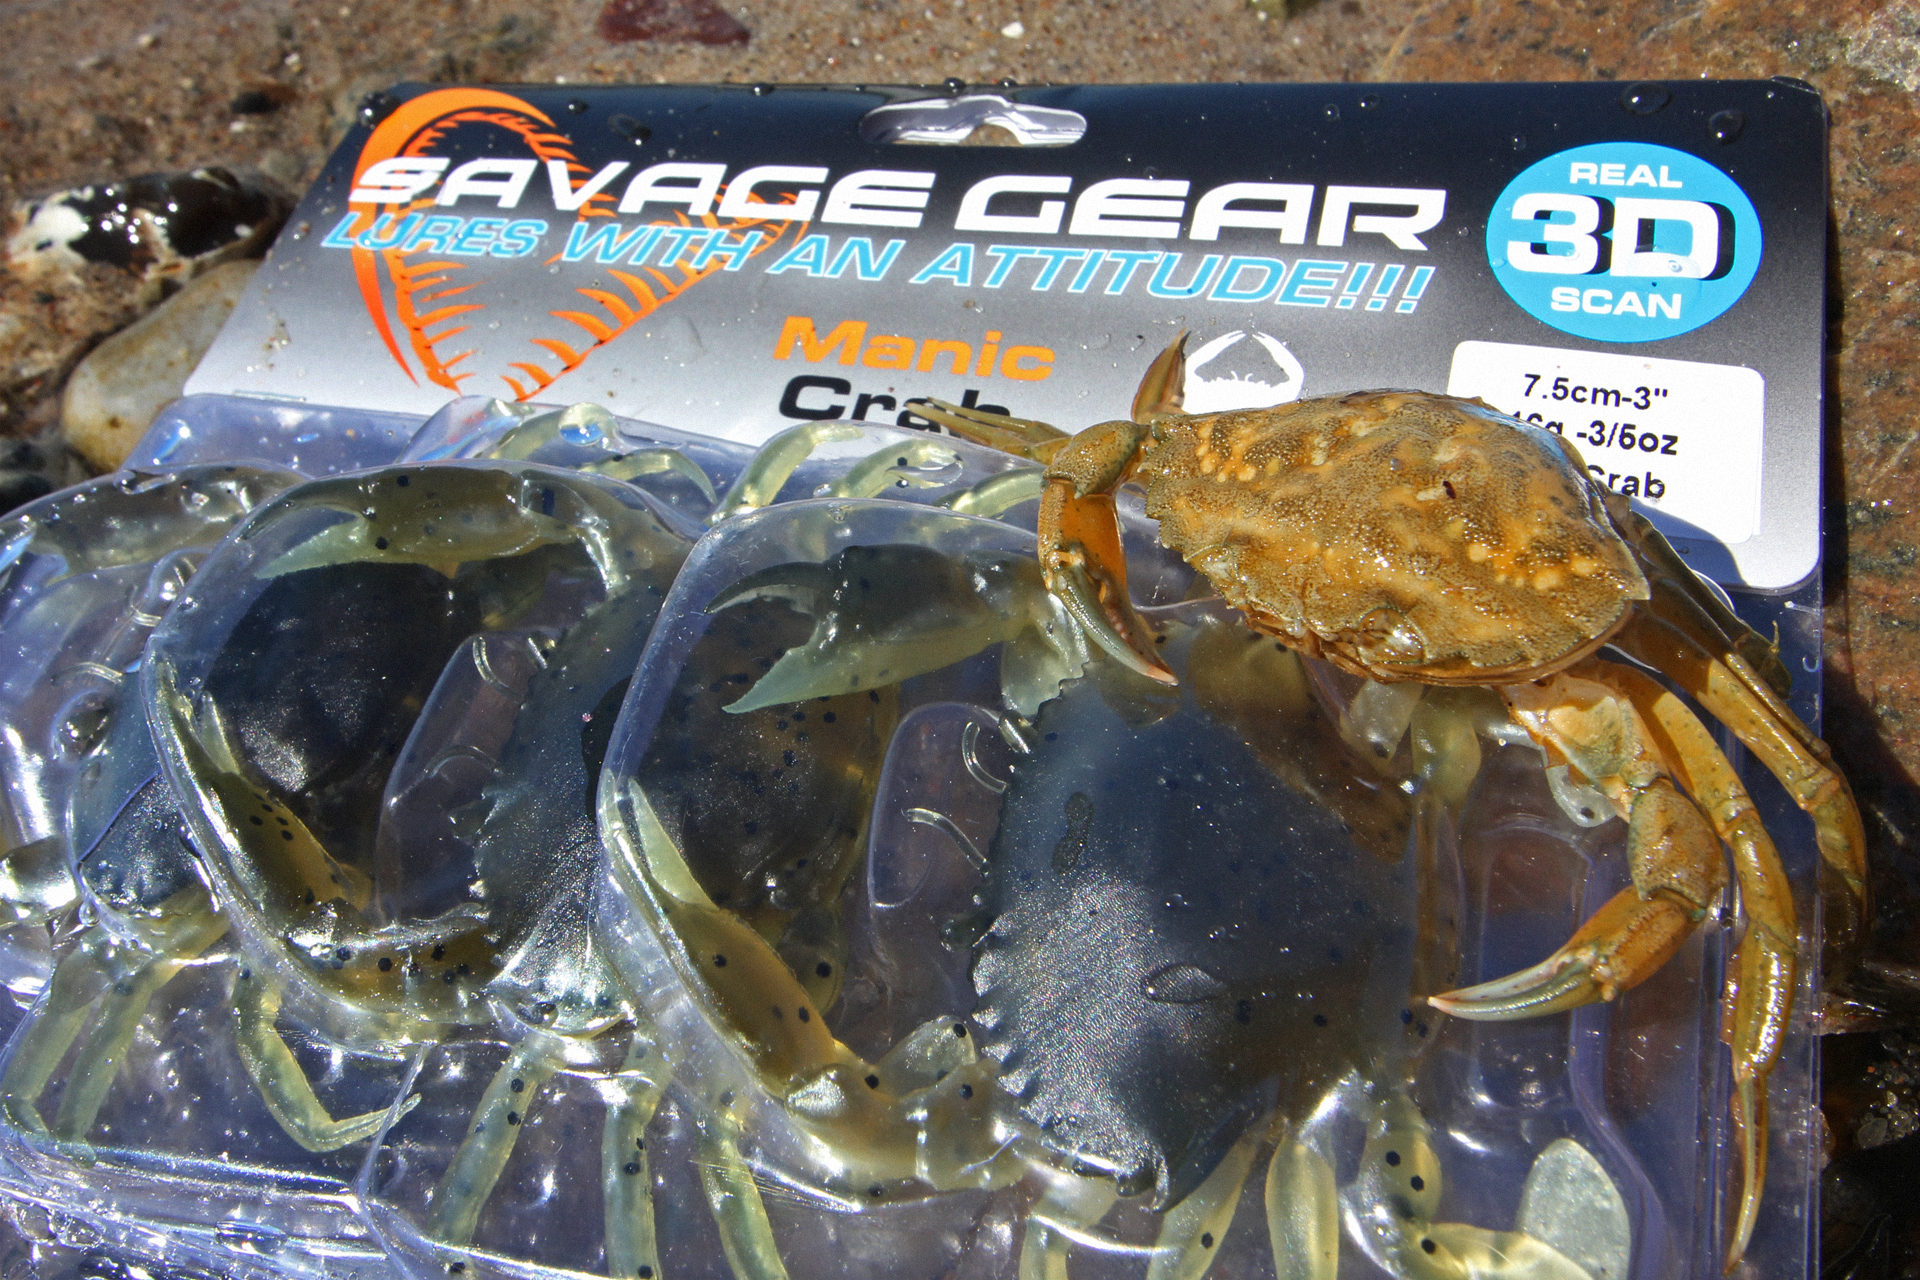 Savage Gear 3D Manic Crab als Dorschköder